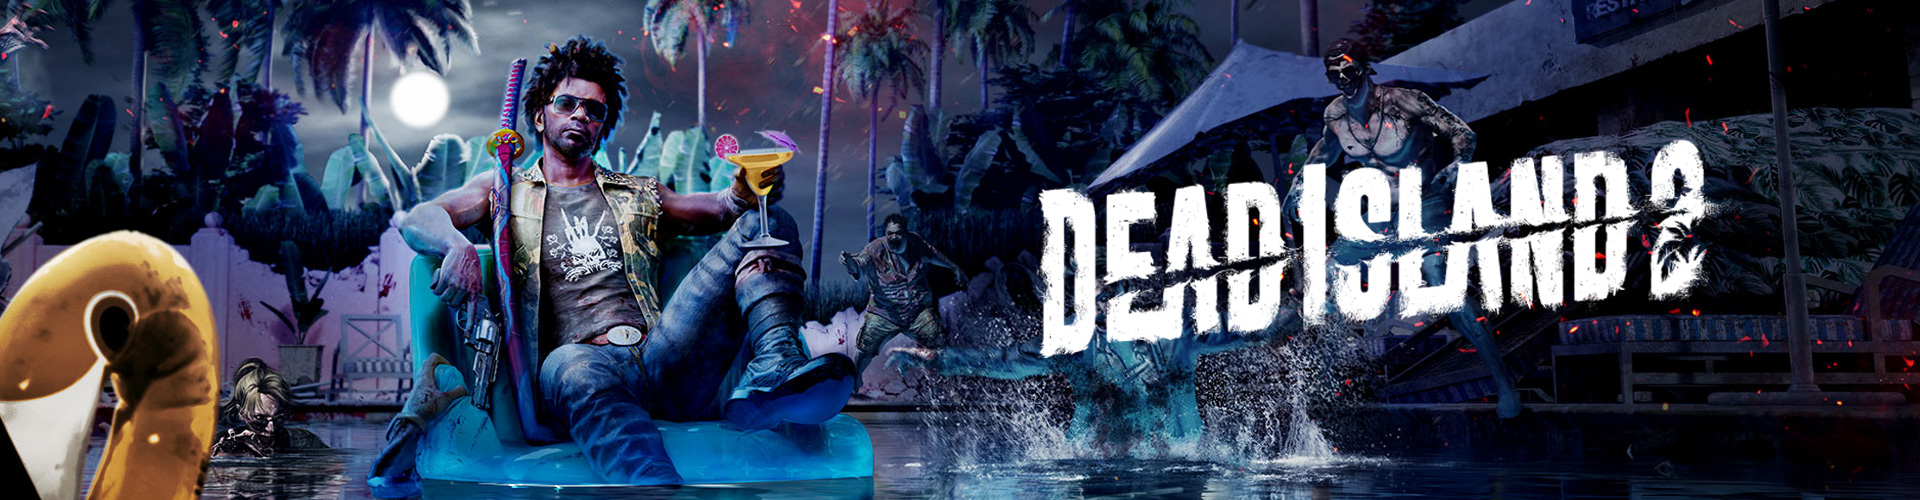 Dead Island 2: een multiplayer horror game tegen zombies